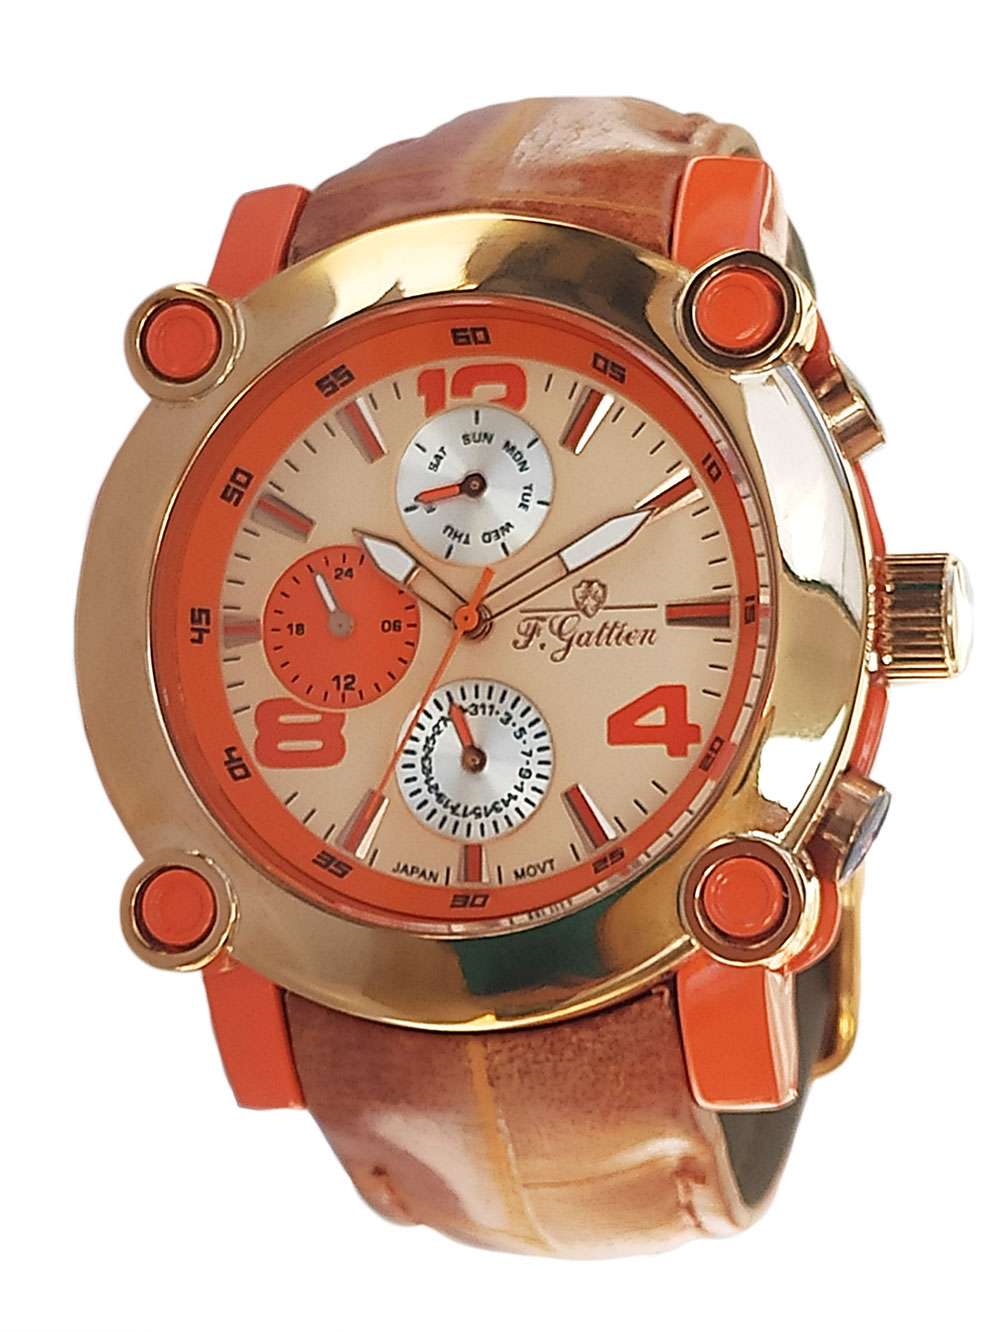 Наручные часы унисекс F.Gattien 9103 коричневые